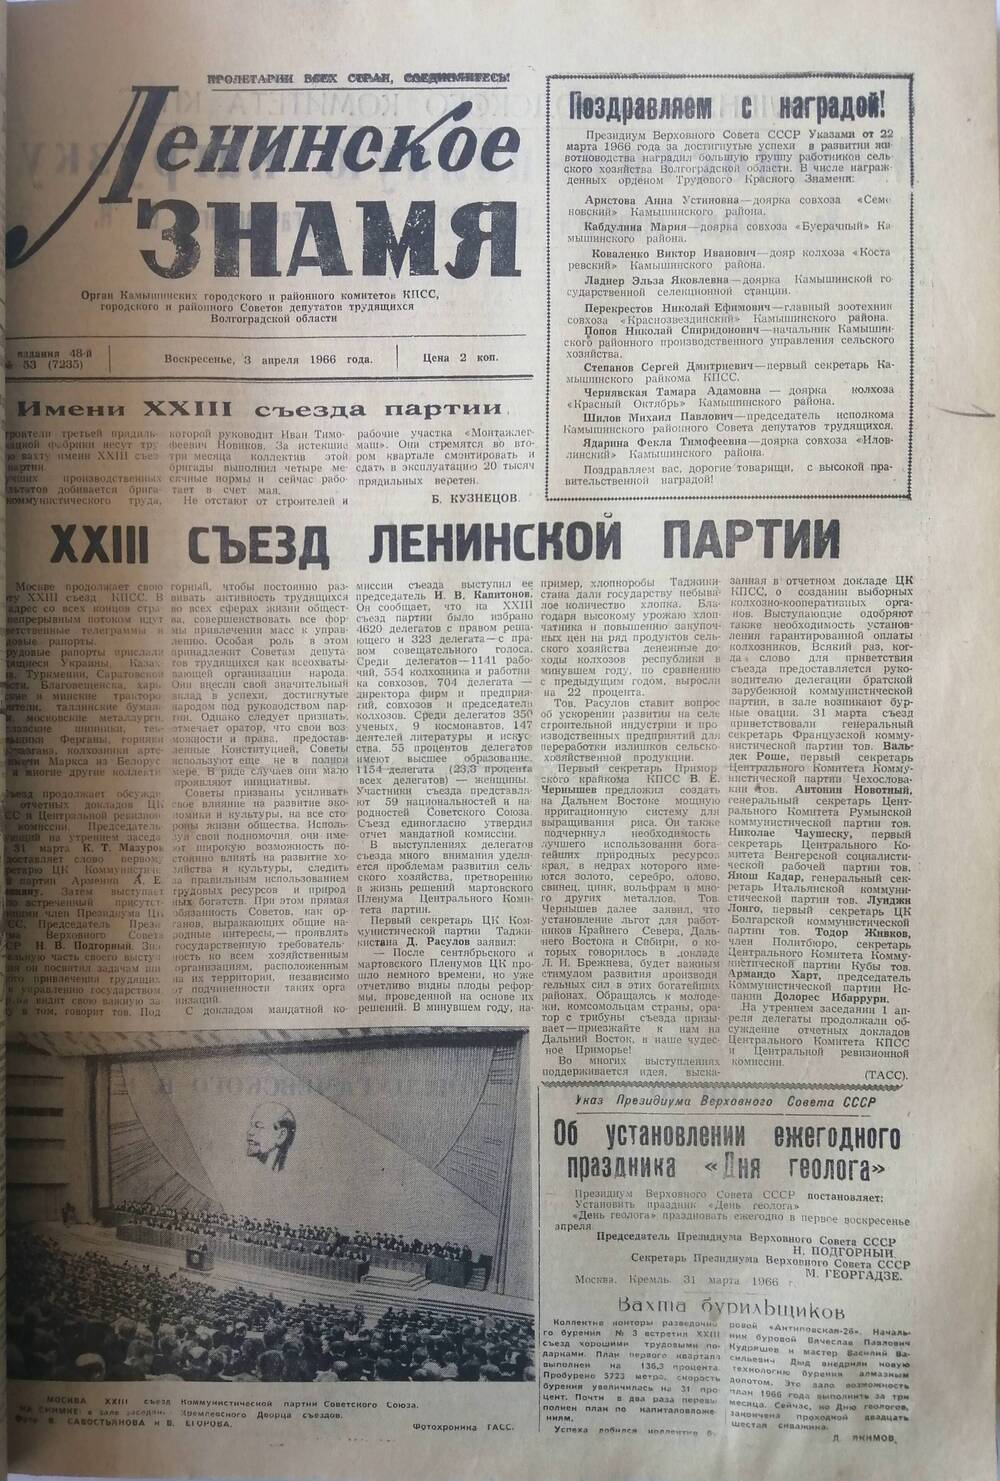 Подшивка газет «Ленинское знамя» за 1966 год.